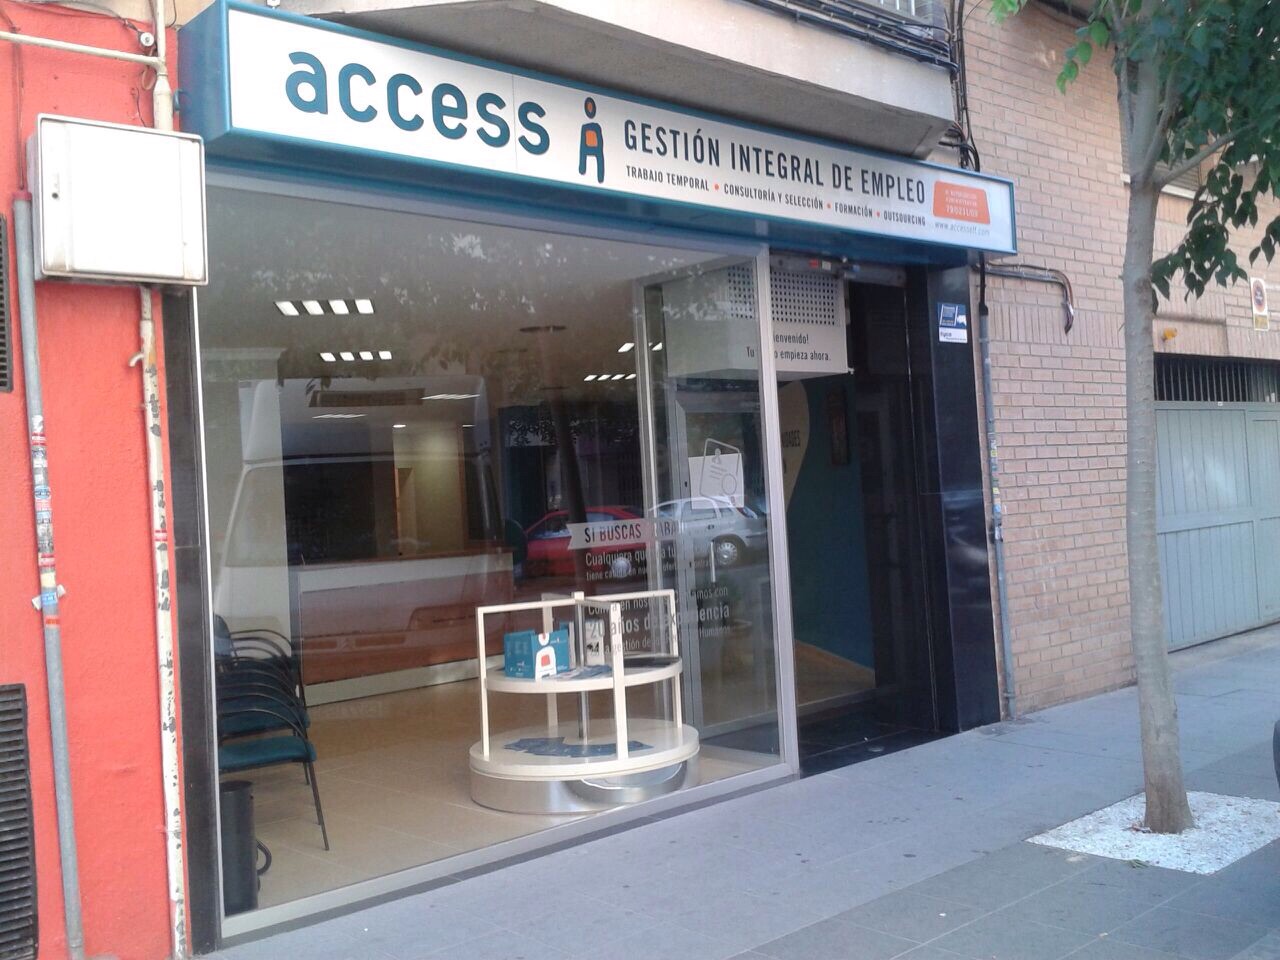 Oficina Access ETT Castellón